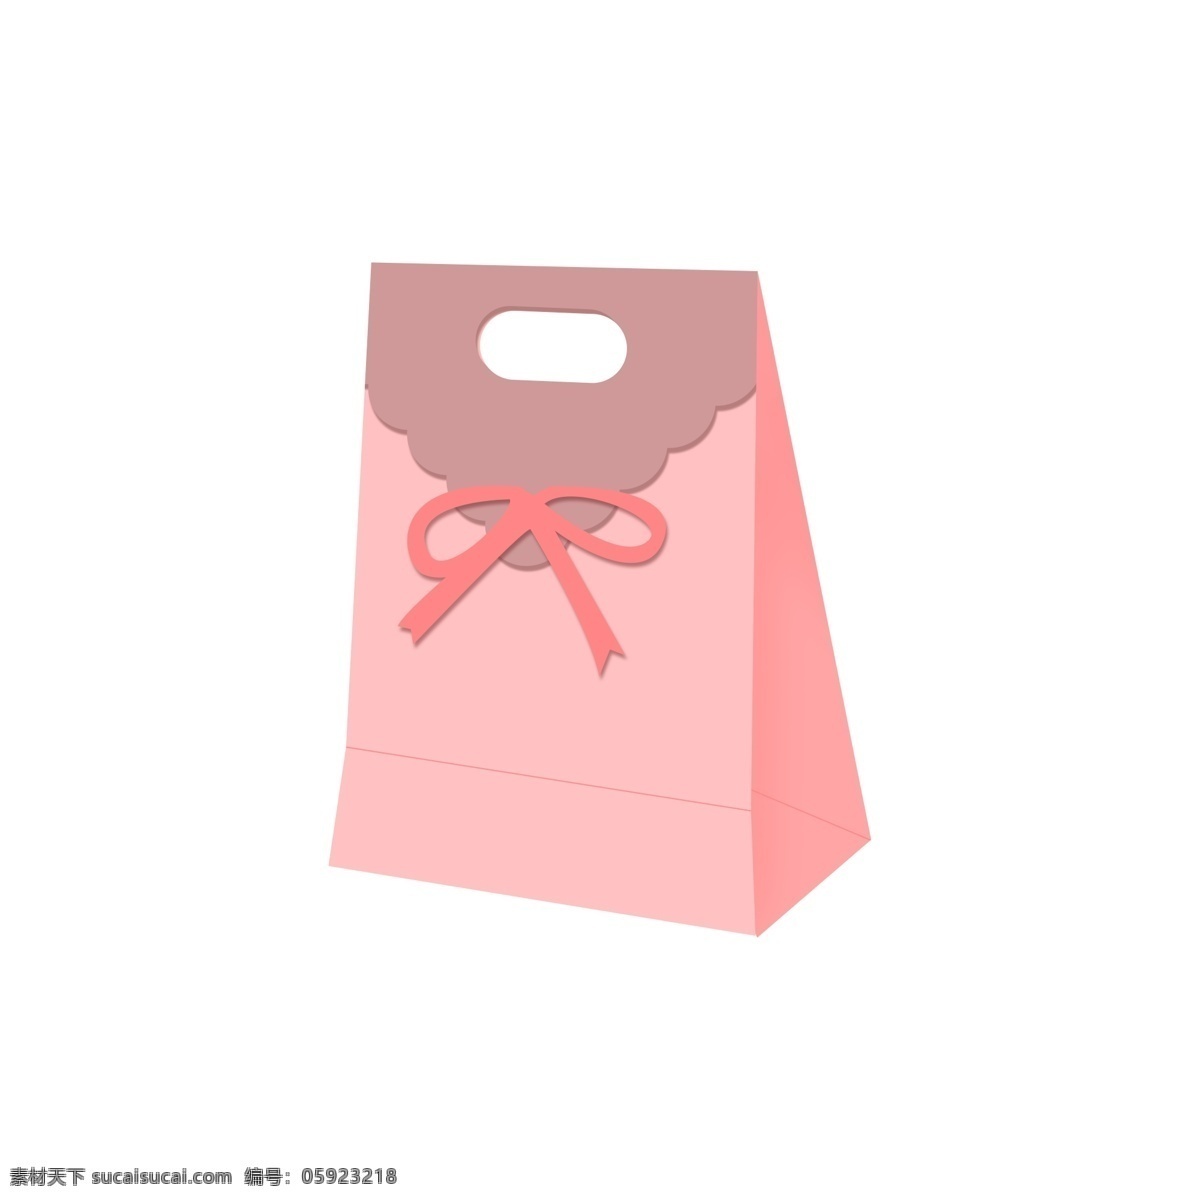 粉色 礼品 礼物 包装袋 礼盒 类 元素 设计元素 礼物袋